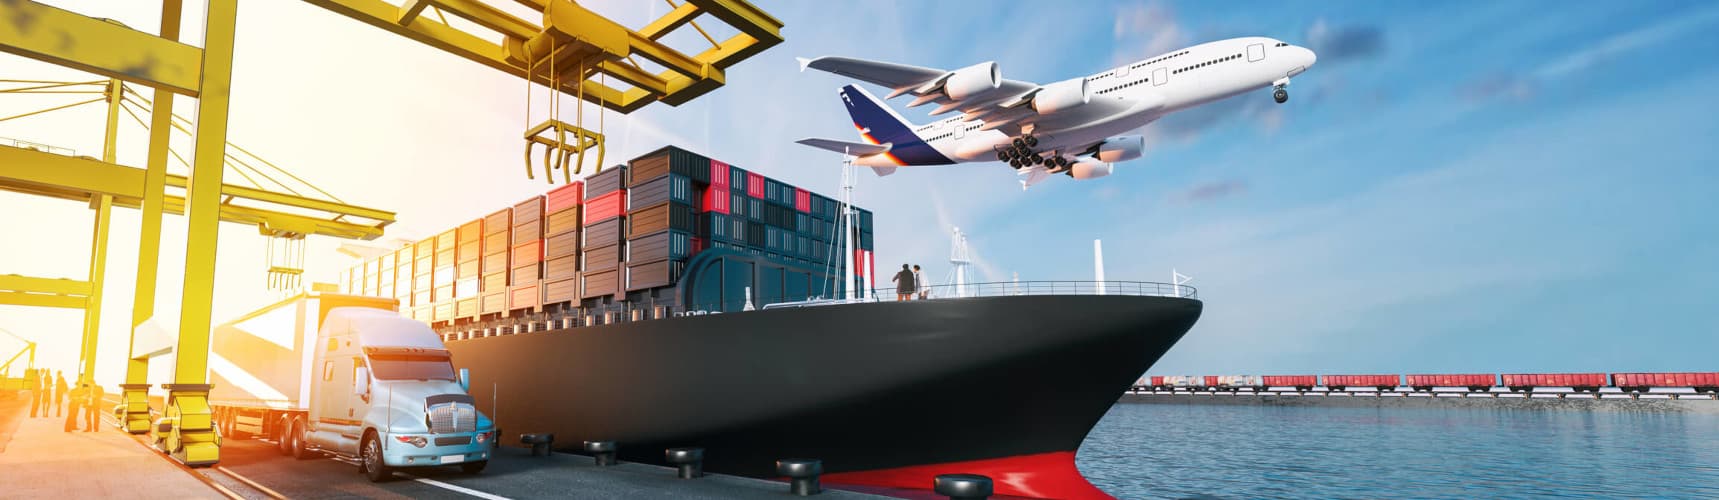 Transporte intermodal: um caminhão, um navio e avião dispostos lado a lado em um porto